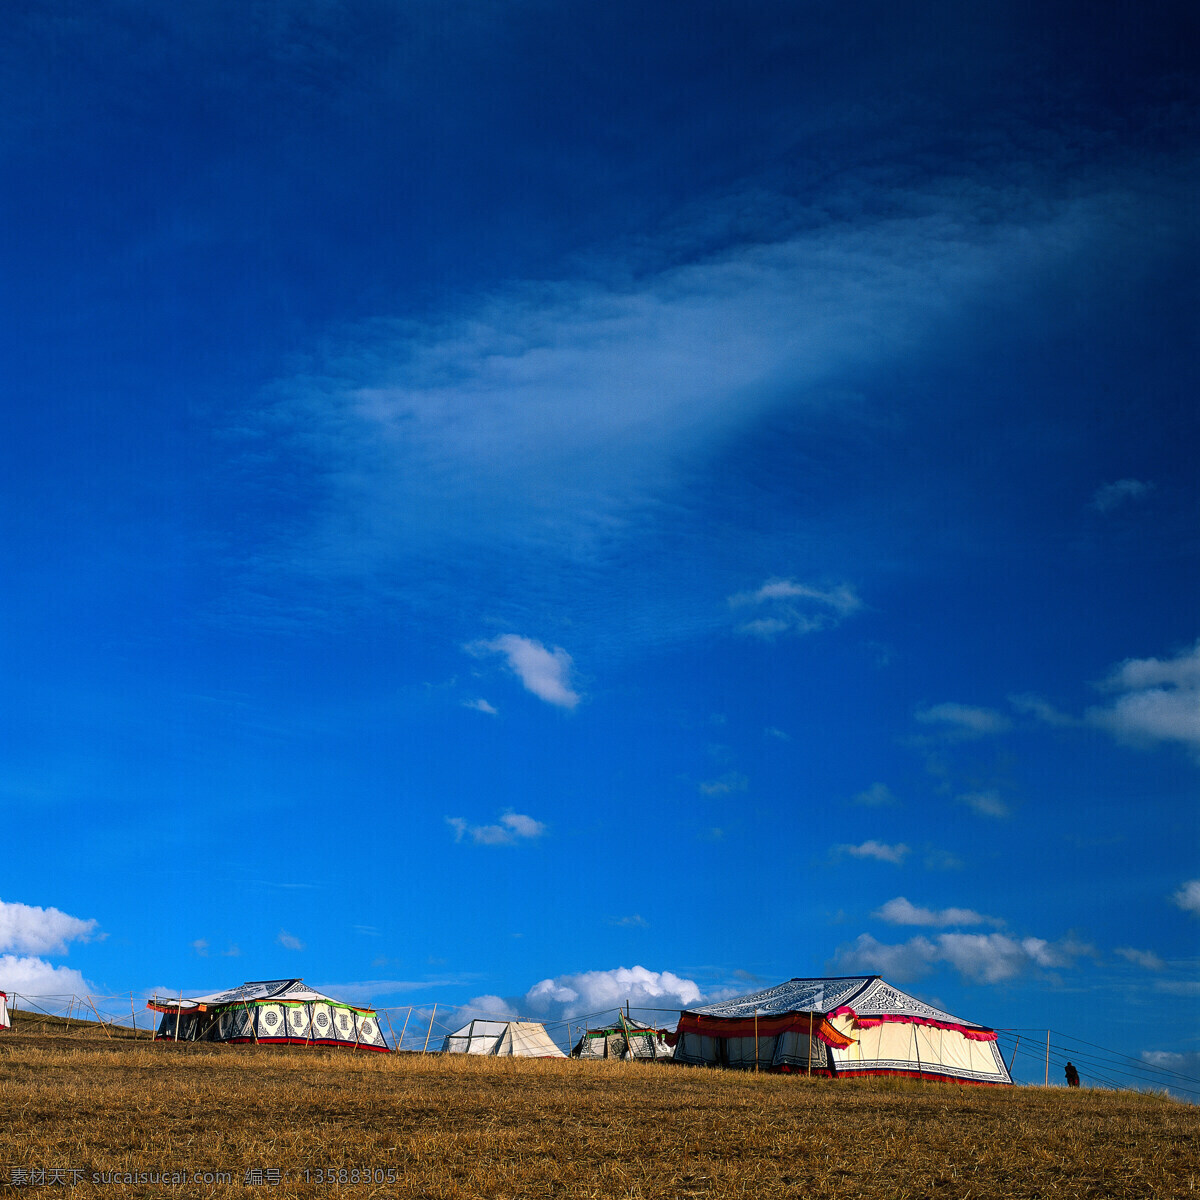 草原 风景摄影 大自然 自然风景 美丽风景 美景 景色 旅游景区 旅游风景 旅游奇观 蒙古包 蓝天白云 草原图片 风景图片